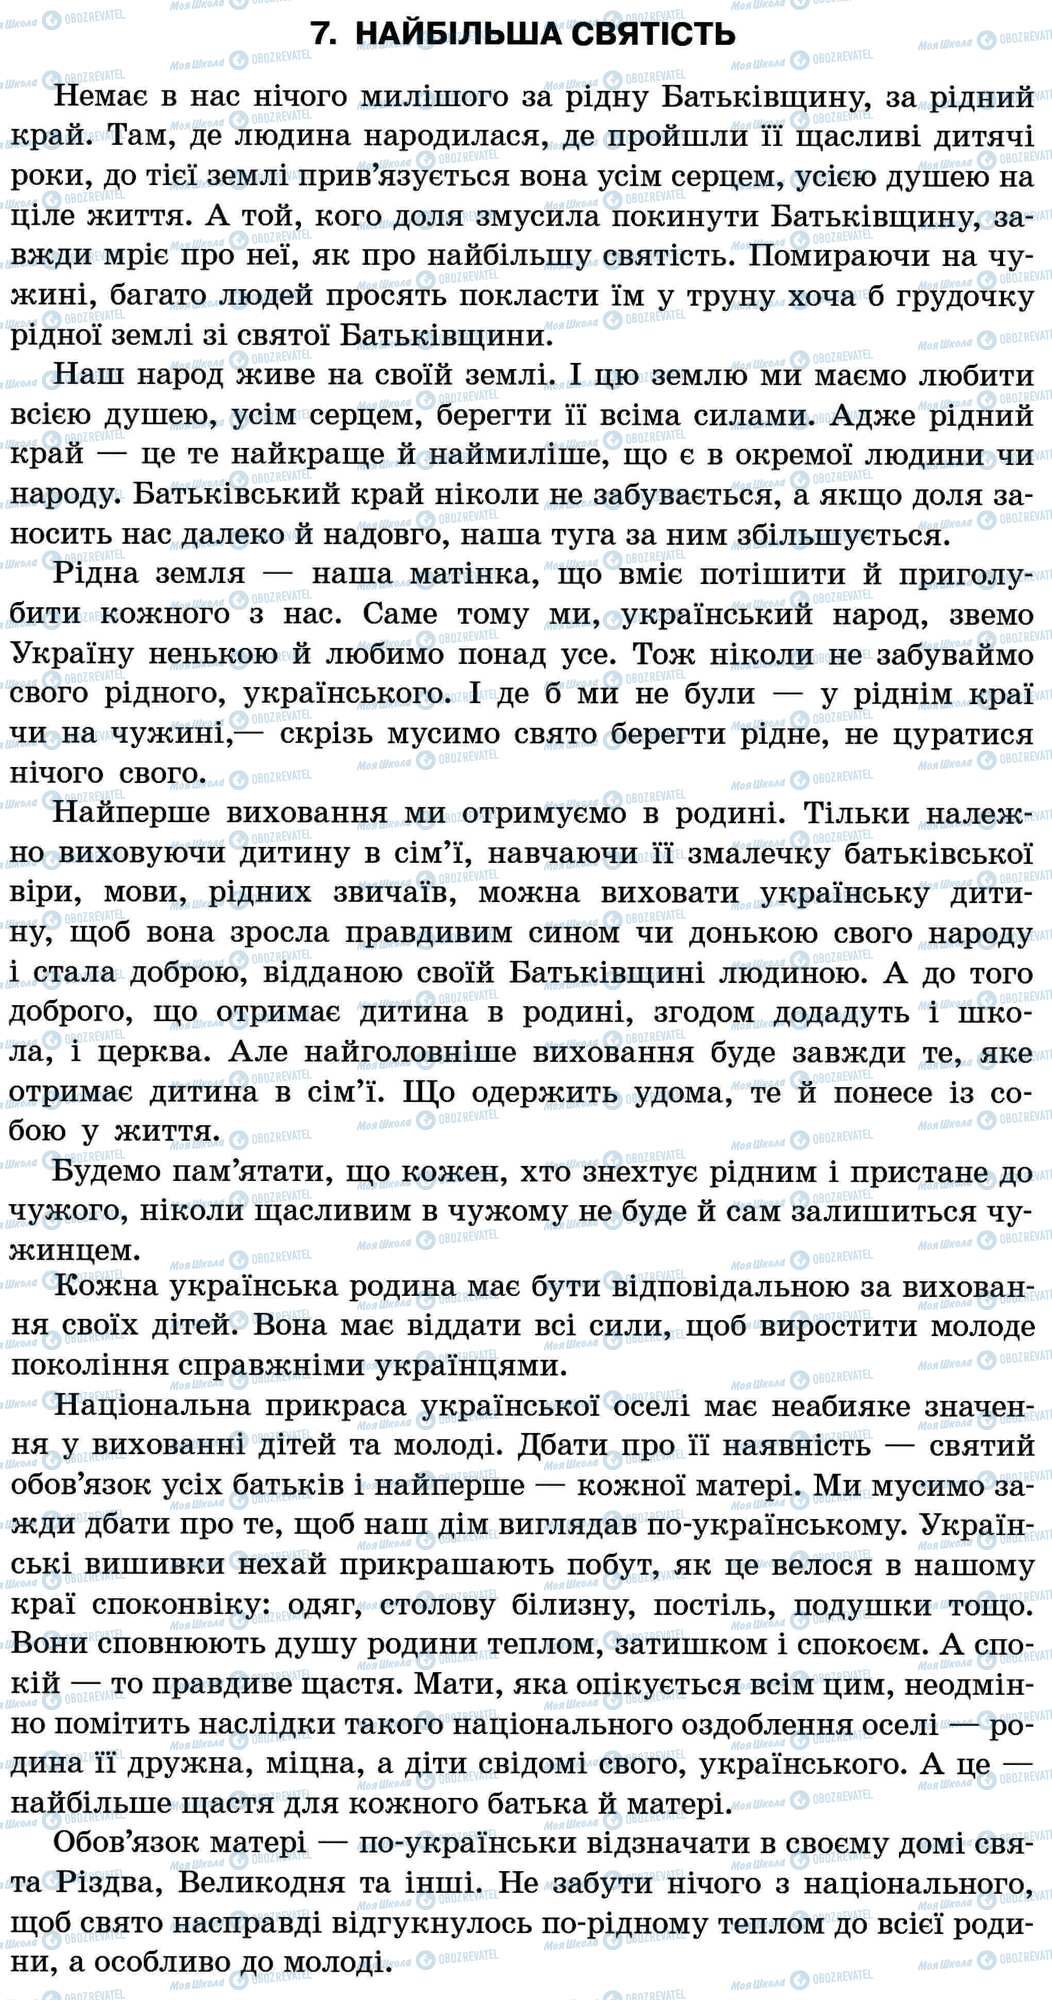 ДПА Укр мова 11 класс страница 7. Найбільша святість